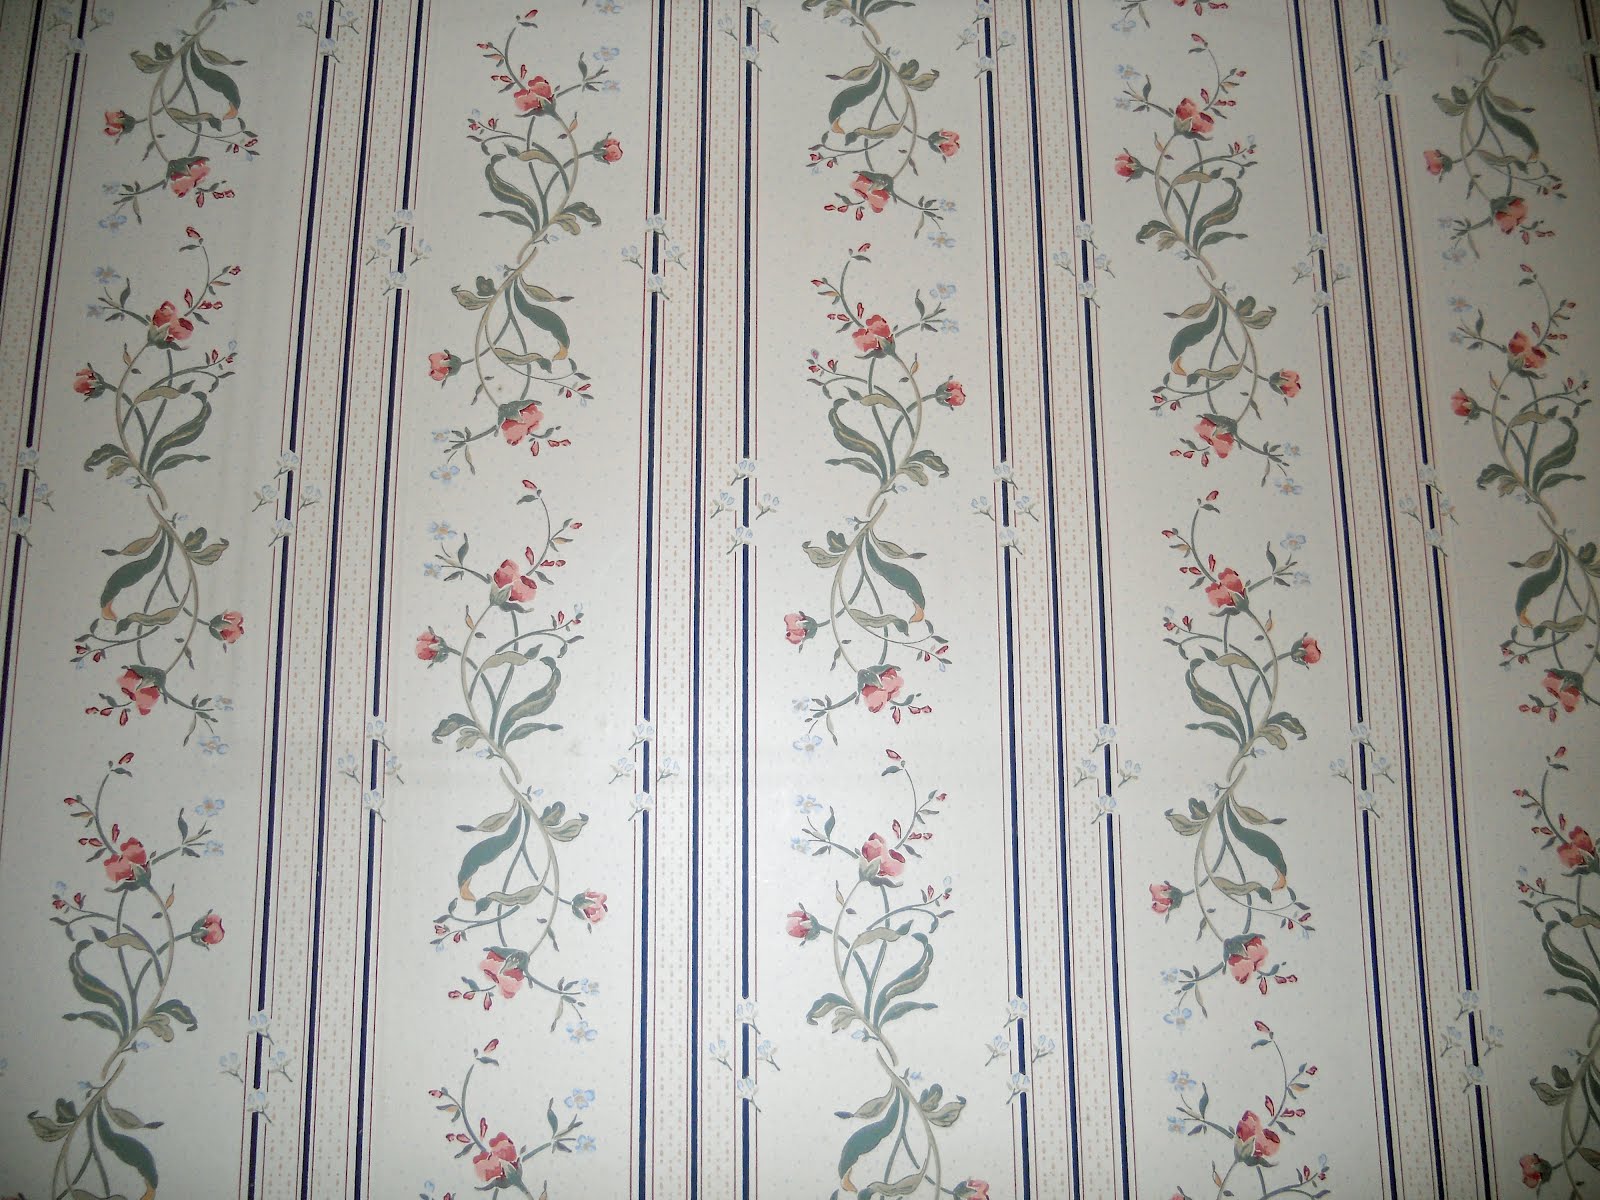 hd wallpapers: Obsolete Wallpaper Patterns